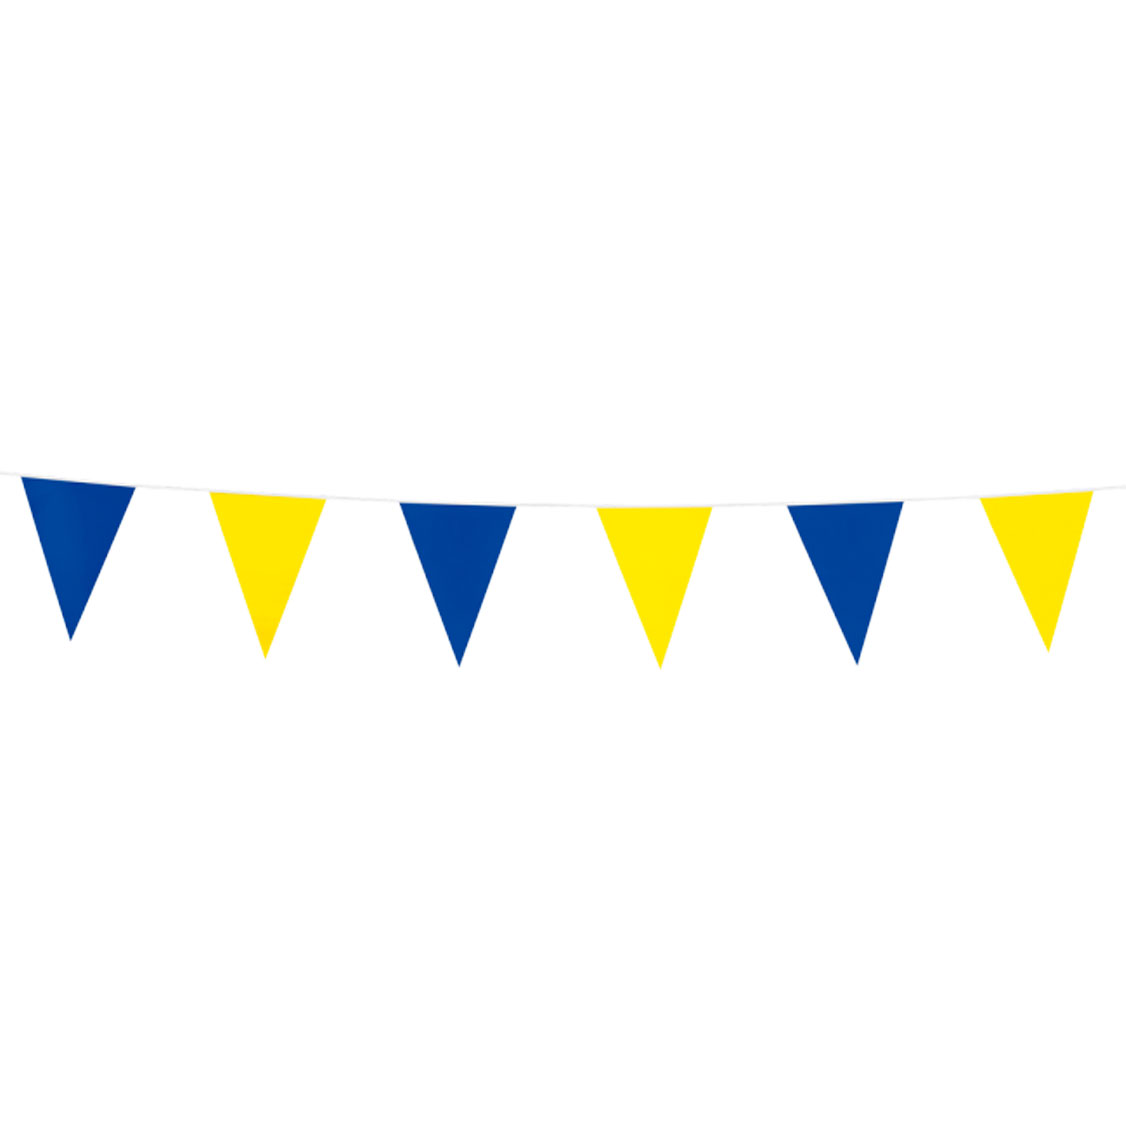 flaggspel med gula och blåa vimplar